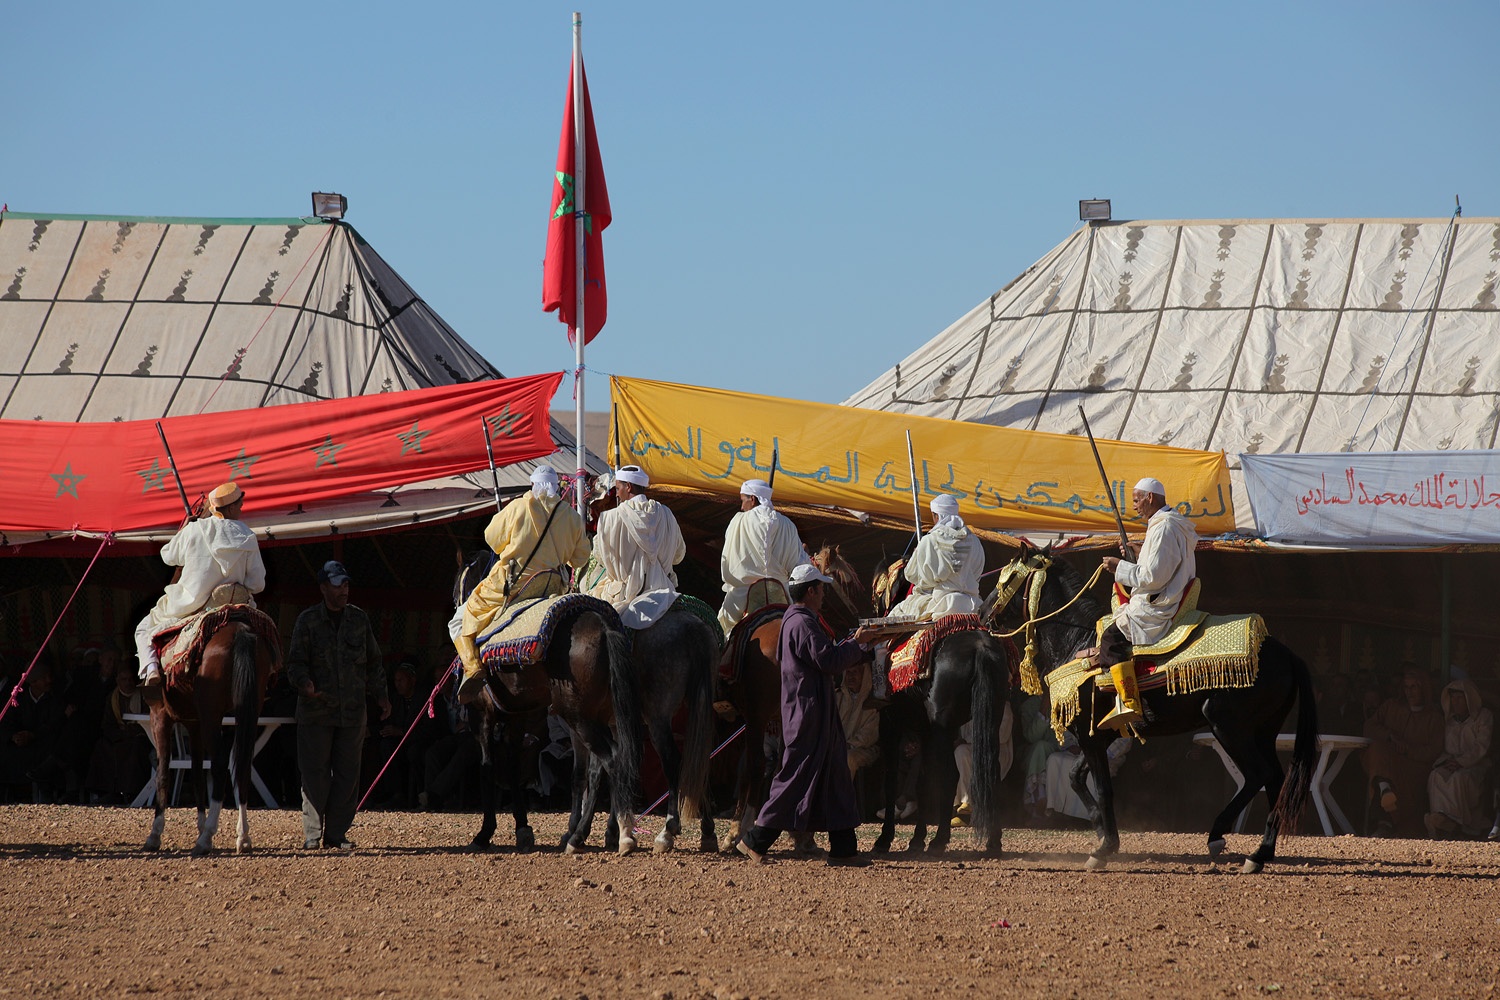 bill-hocker-horse-fantasia-between-marrakech-and-essaouira-morocco-2012